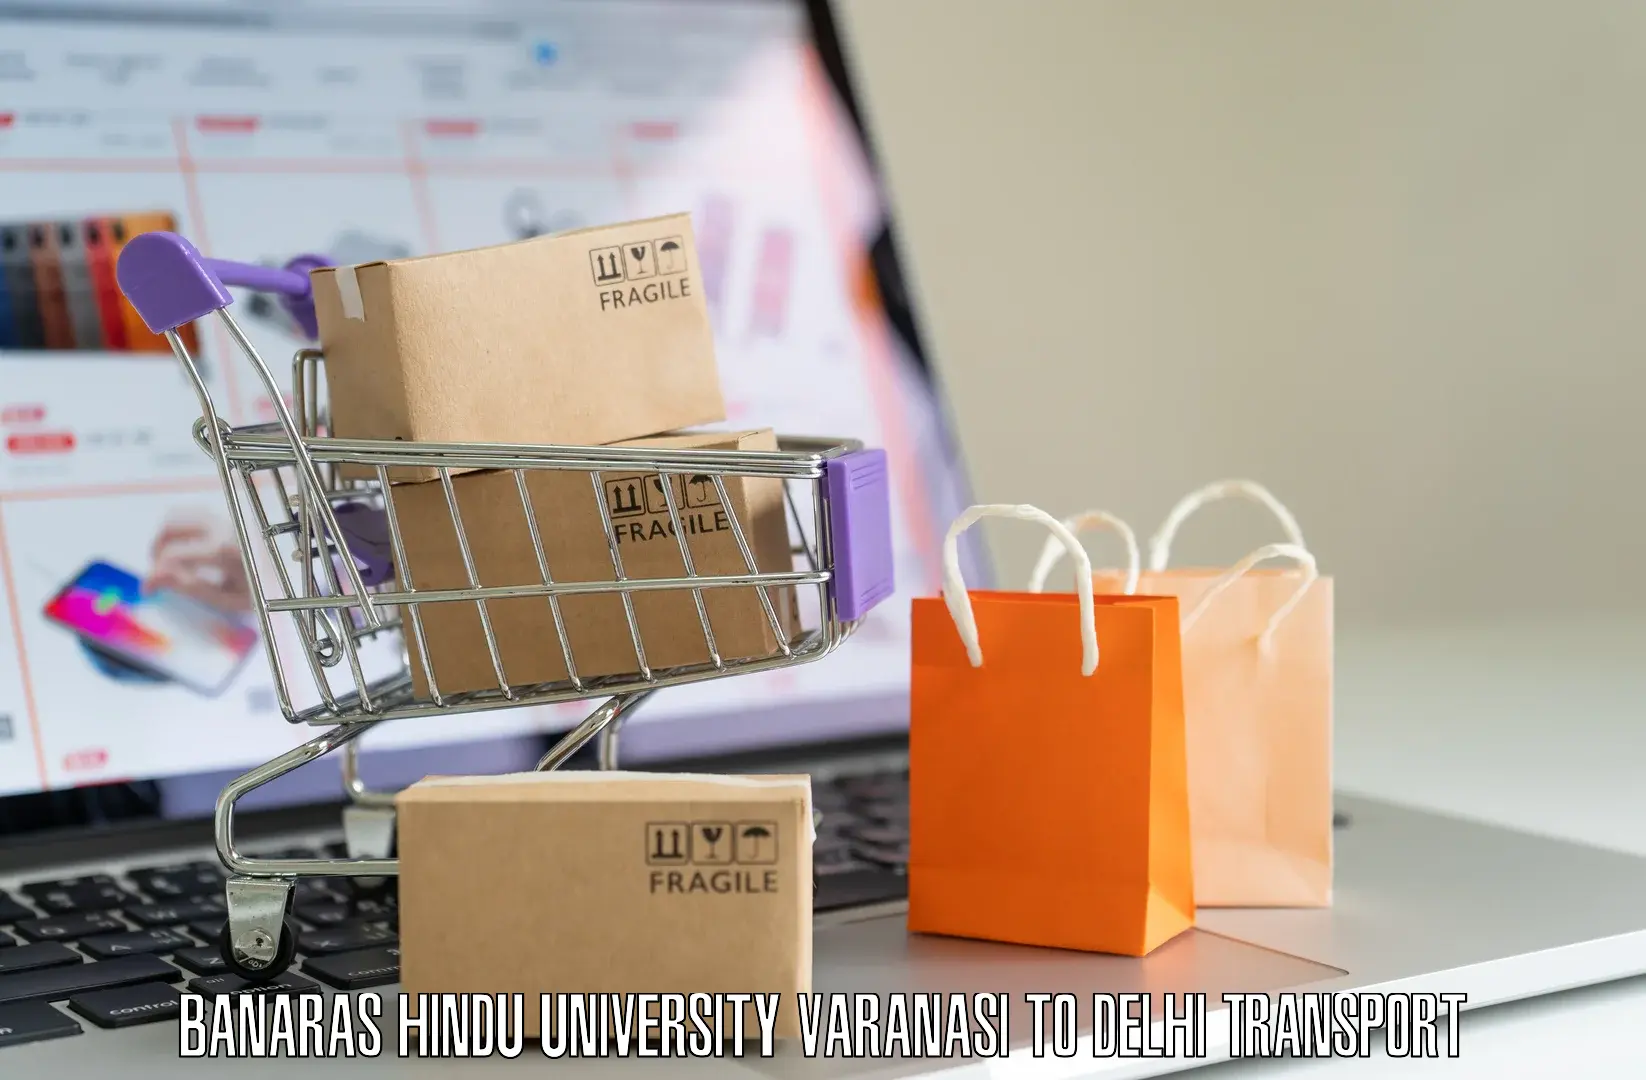 Daily parcel service transport Banaras Hindu University Varanasi to Delhi